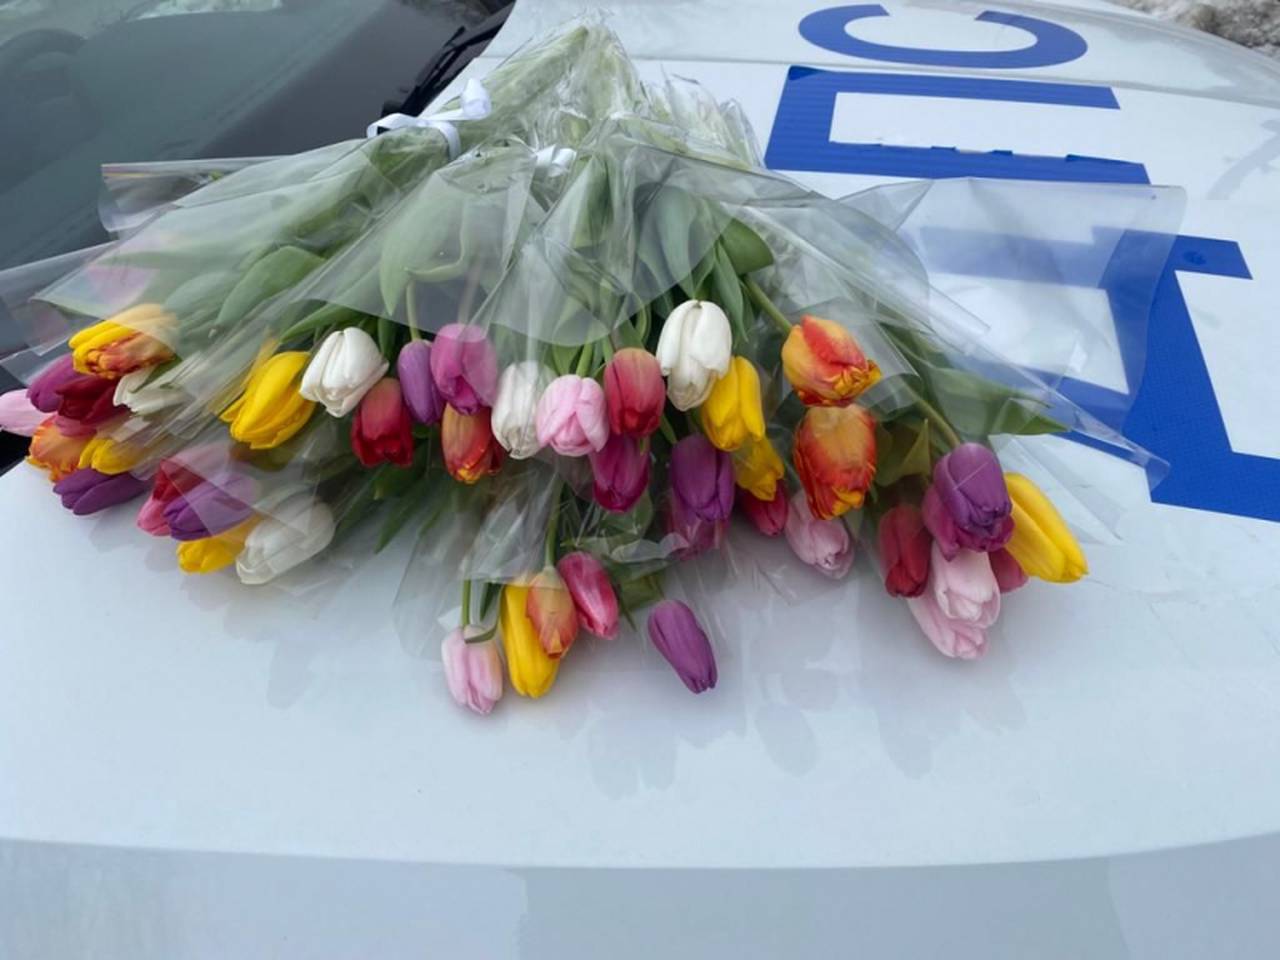 Члены Общественного совета при УВД по ЮАО совместно с полицейскими УВД юга столицы поздравили автоледи с приближающимся Международным женским днем